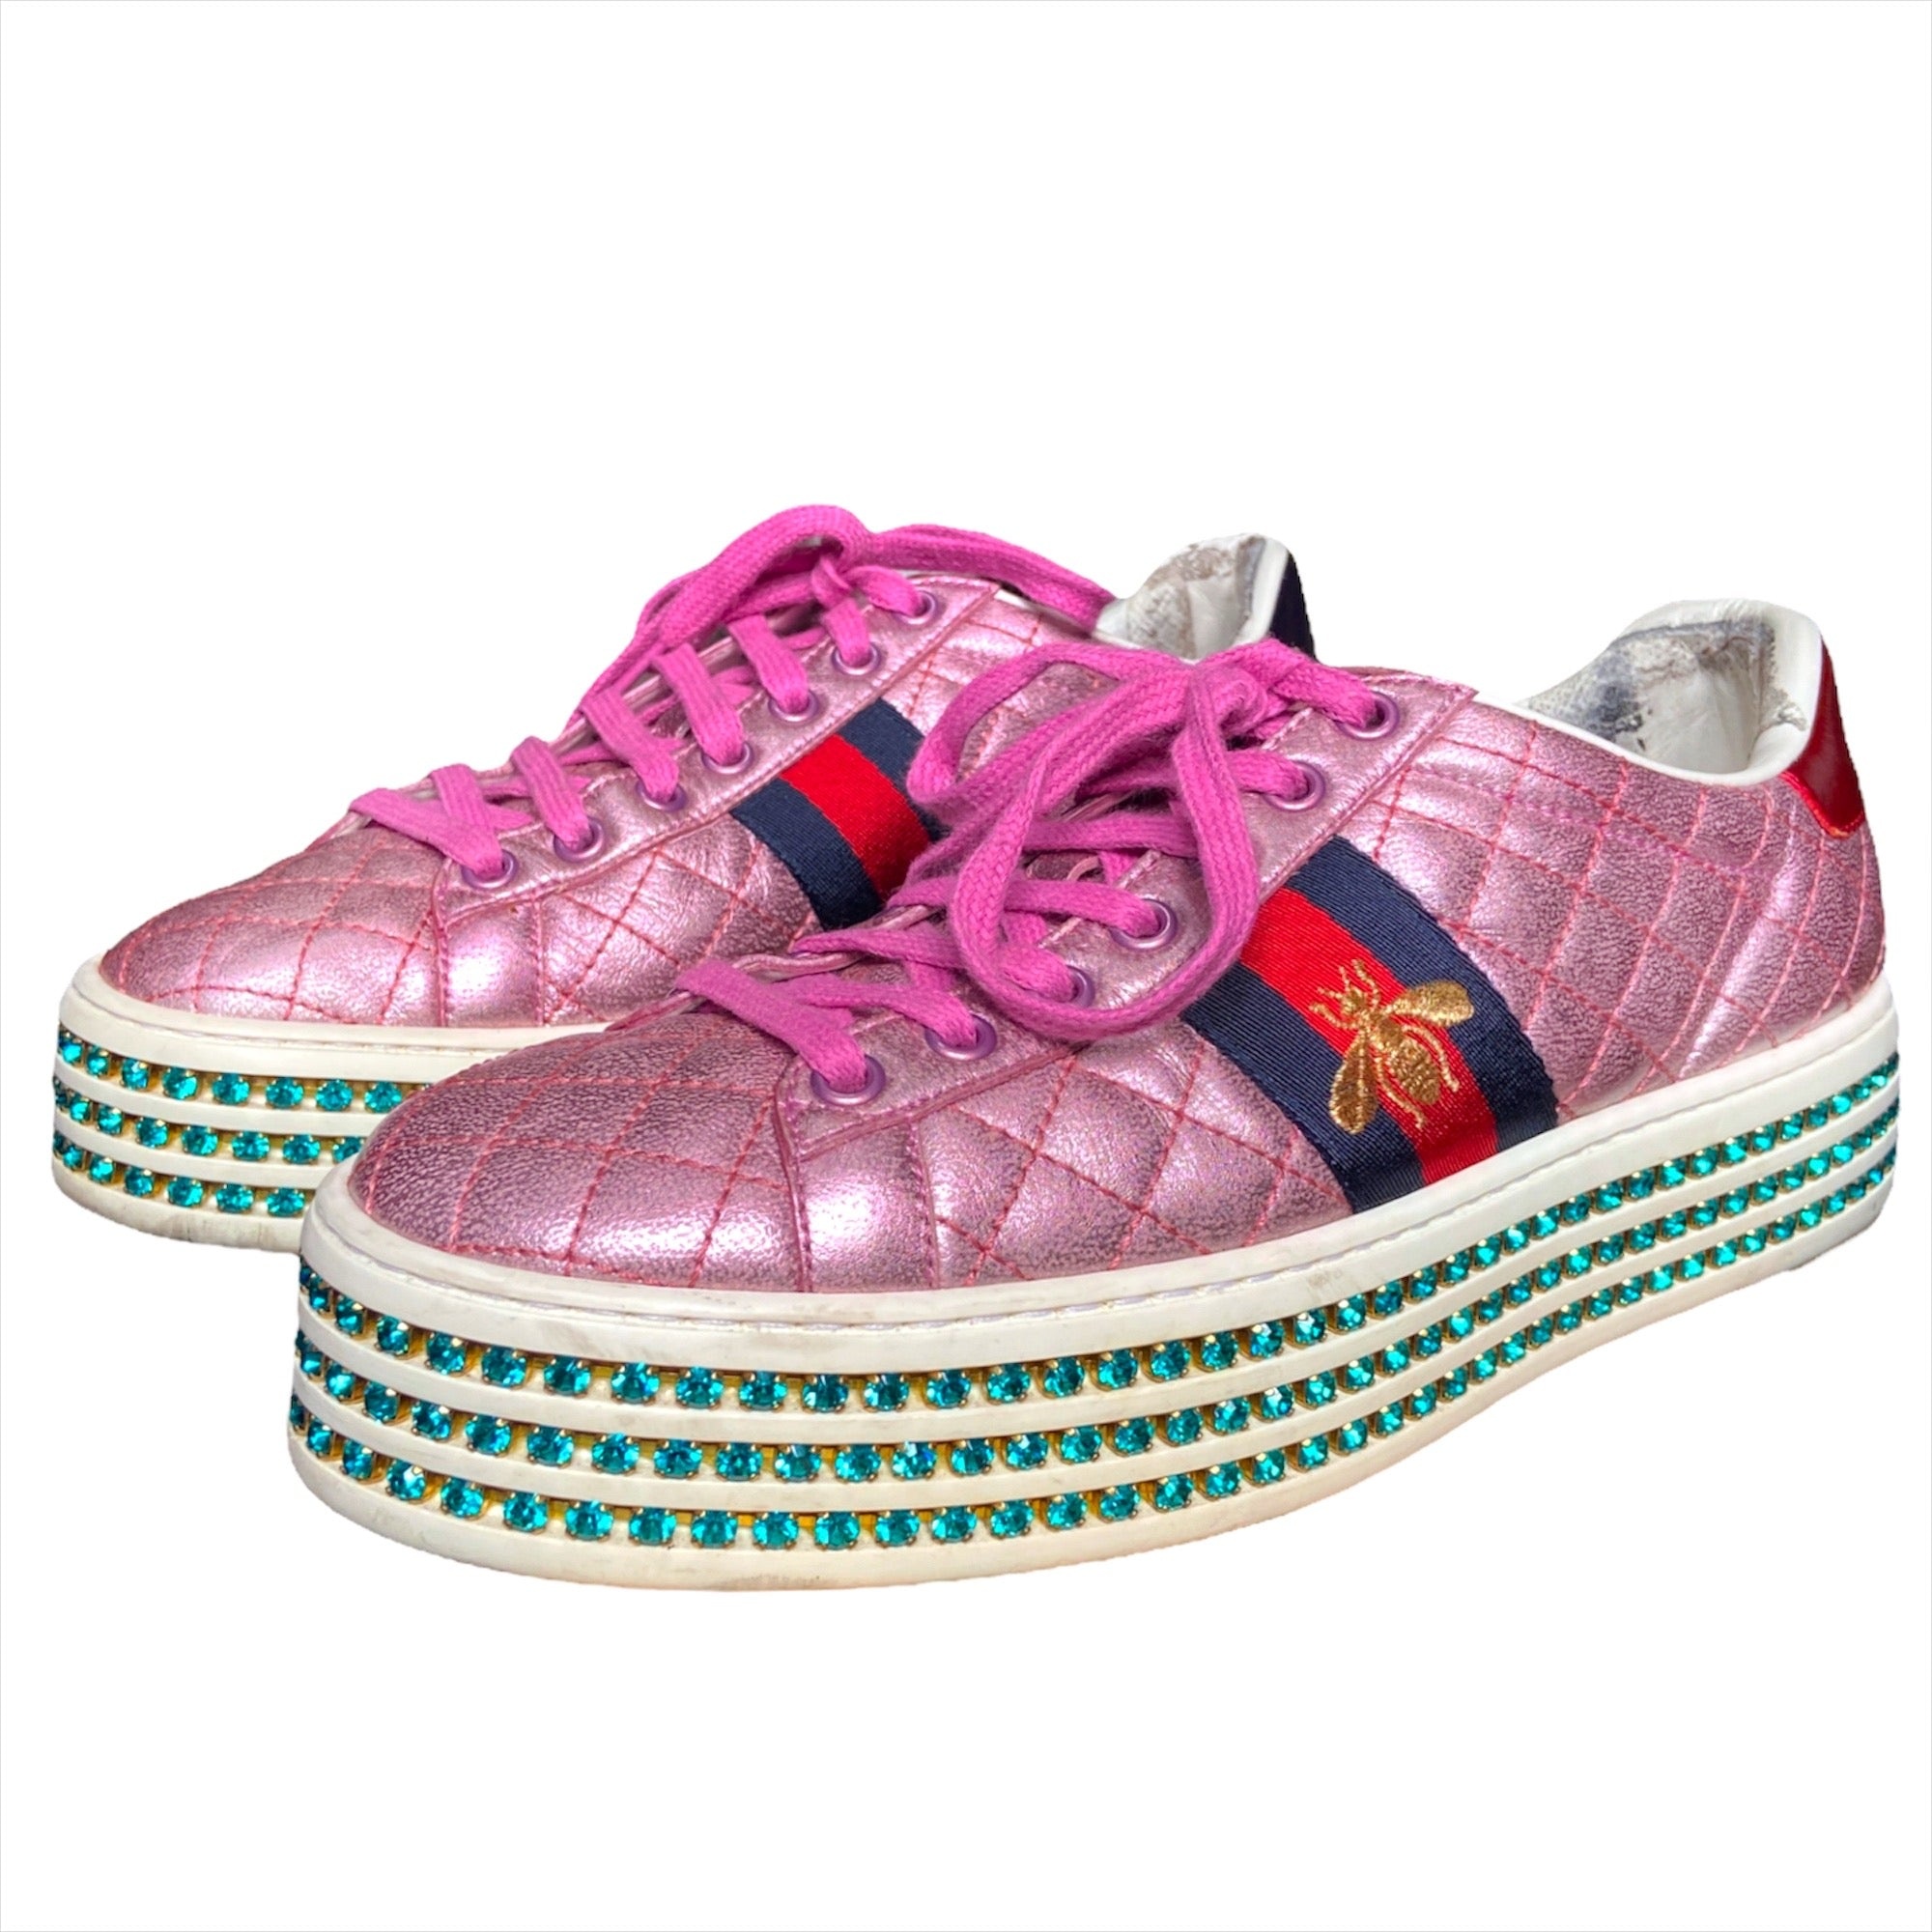 Gucci Swarovski crystal embellished pink platform ace sneaker 37.5 - 1